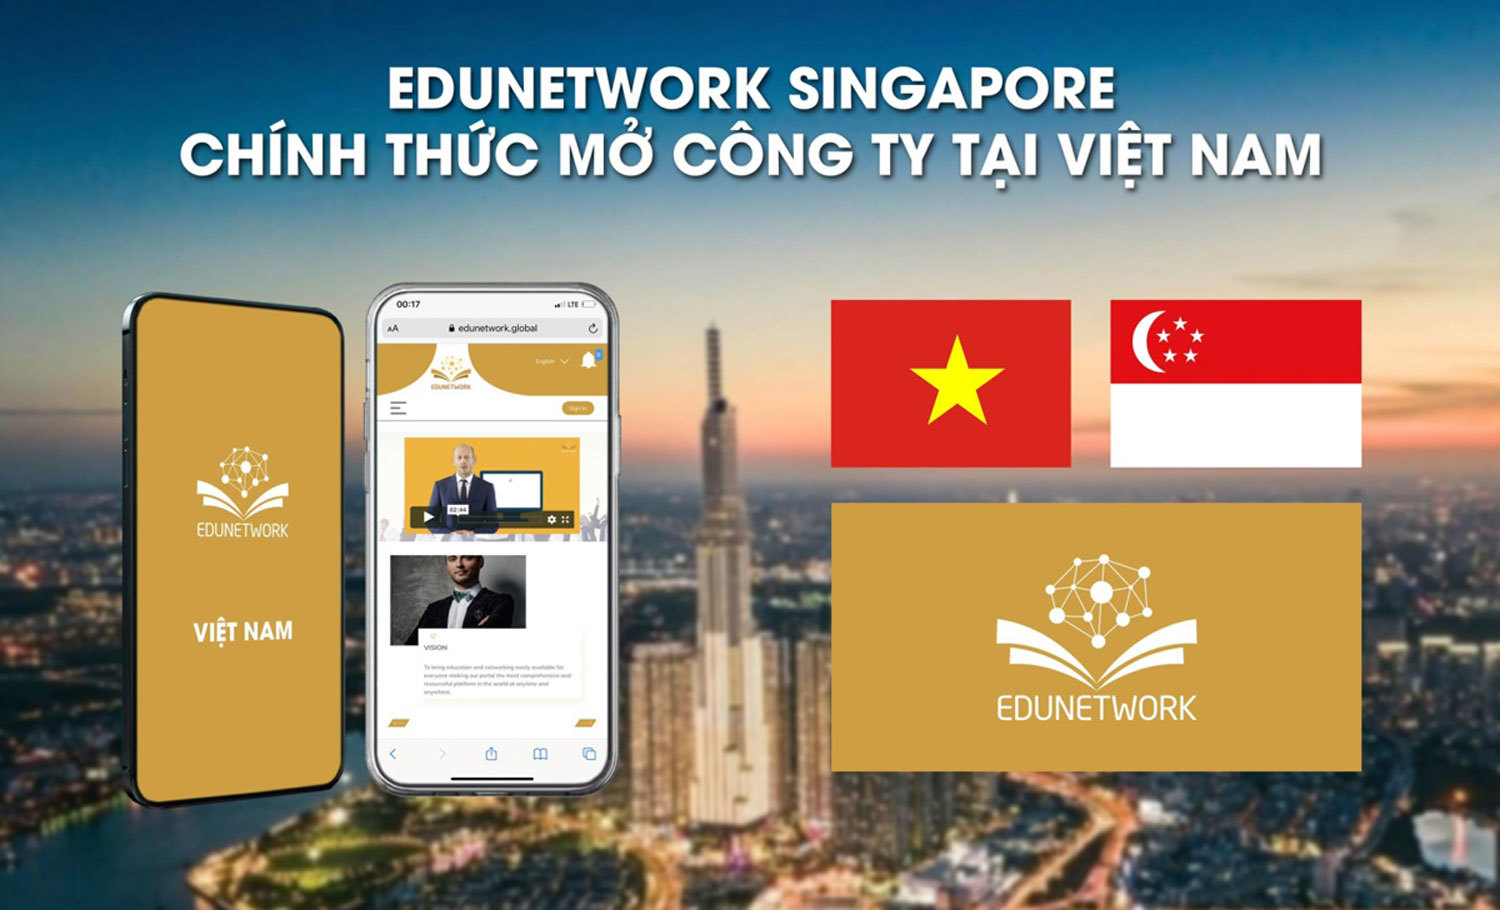 Edunetwork nói gì khi thành lập công ty ở Việt Nam giữa mùa dịch COVID-19